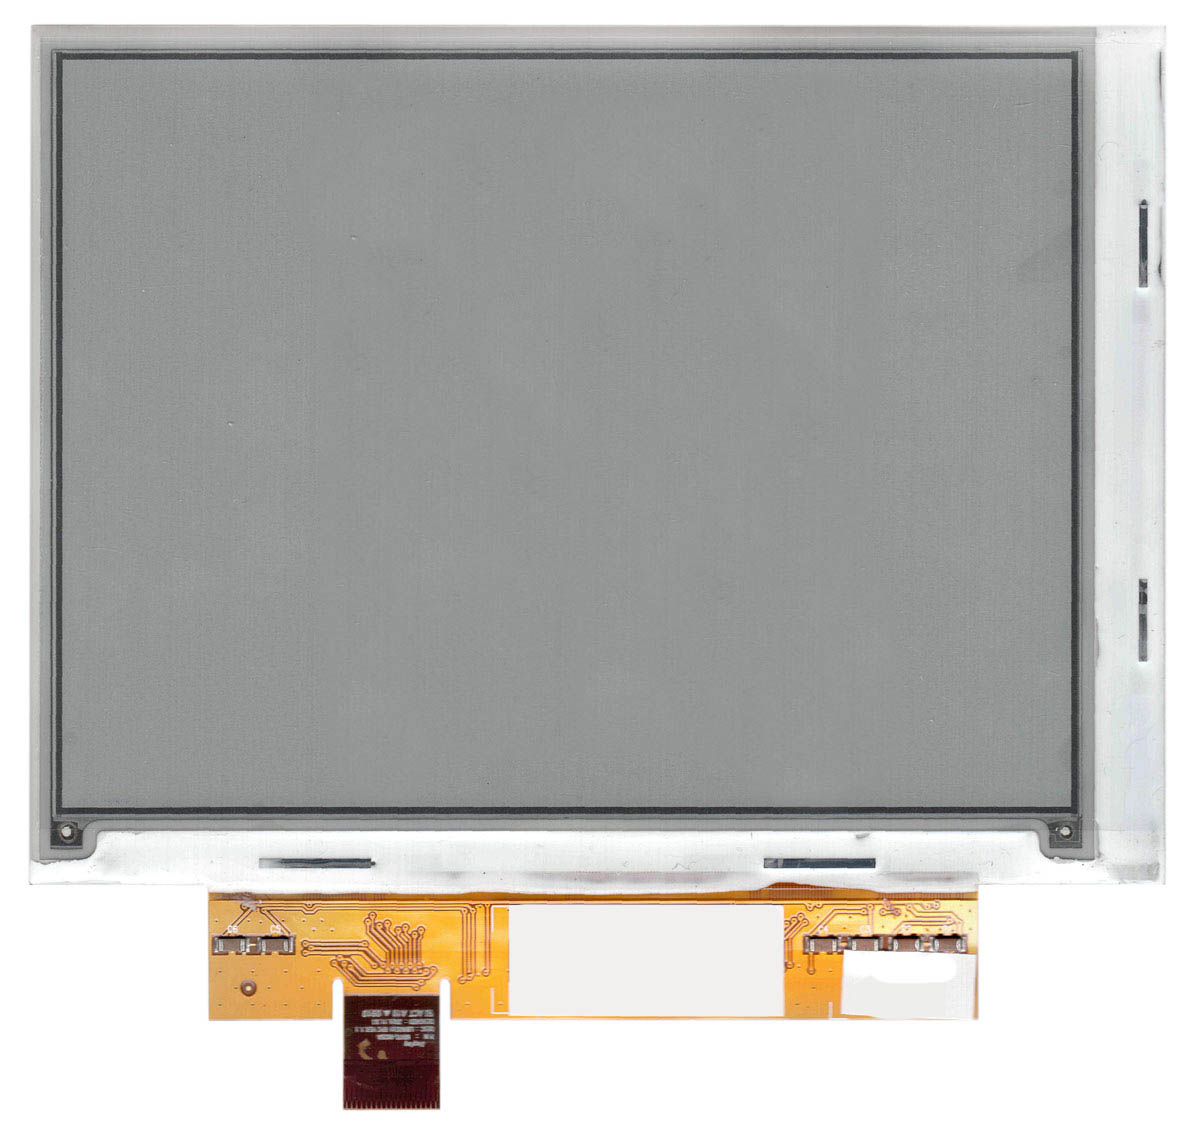 Купить экран для электронной книги e-ink 6" LG LB060S01-RD02 (800x600)